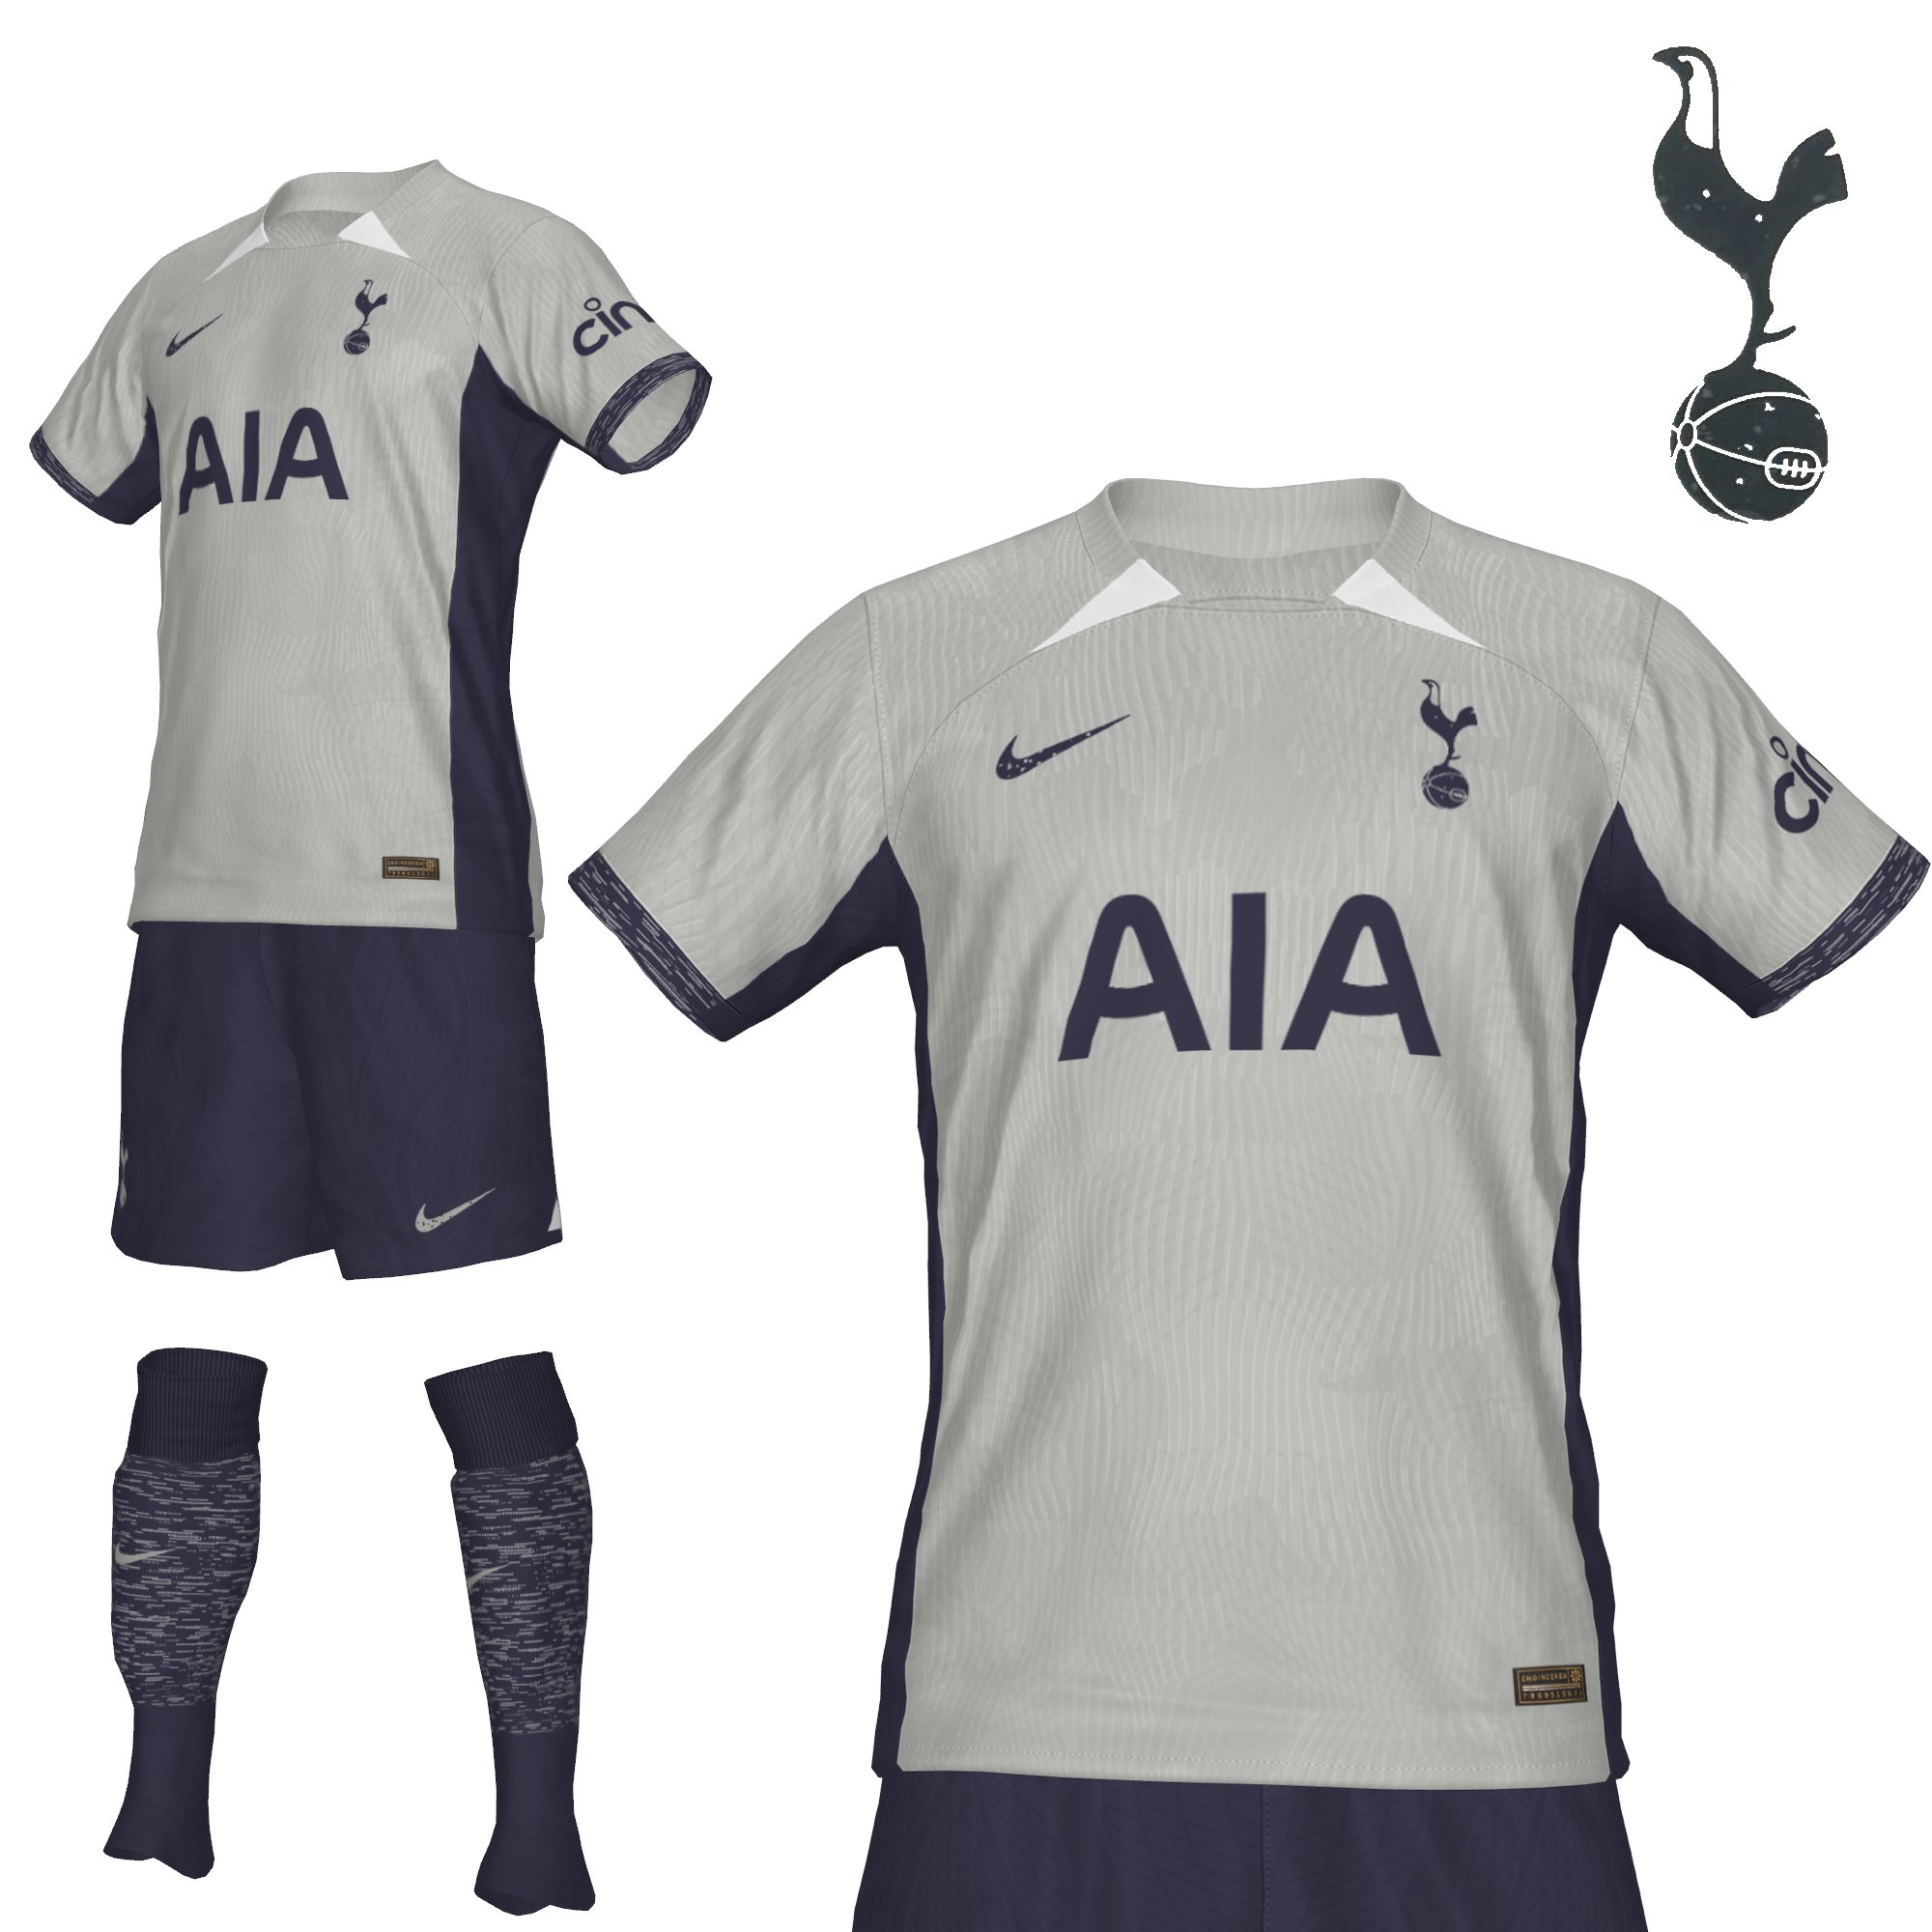 Tottenham Hotspur home kit for 2023/24 season LEAKED!